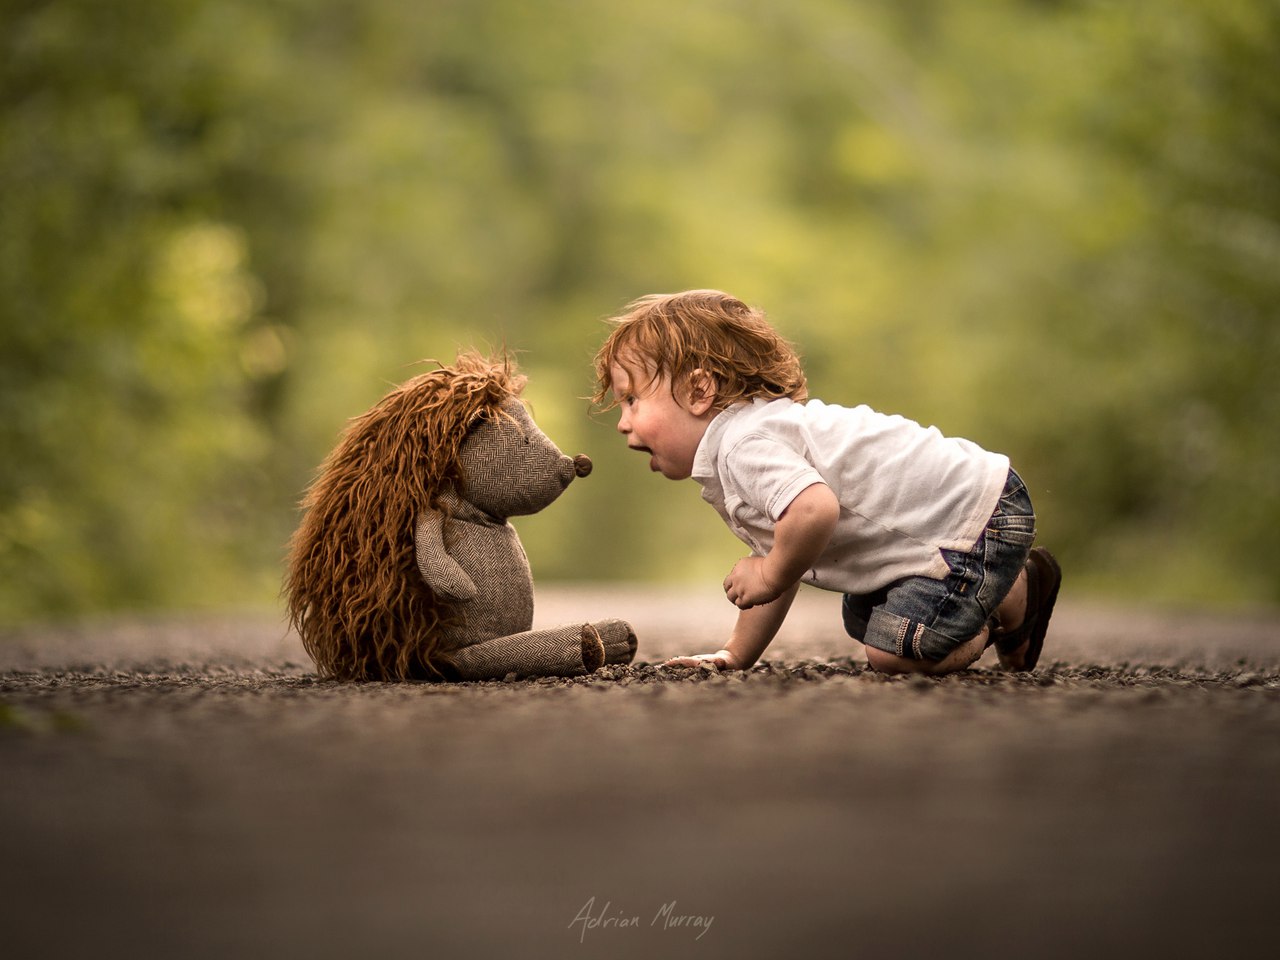 Фото Мальчик с игрушечным ежиком, by Adrian C. Murray